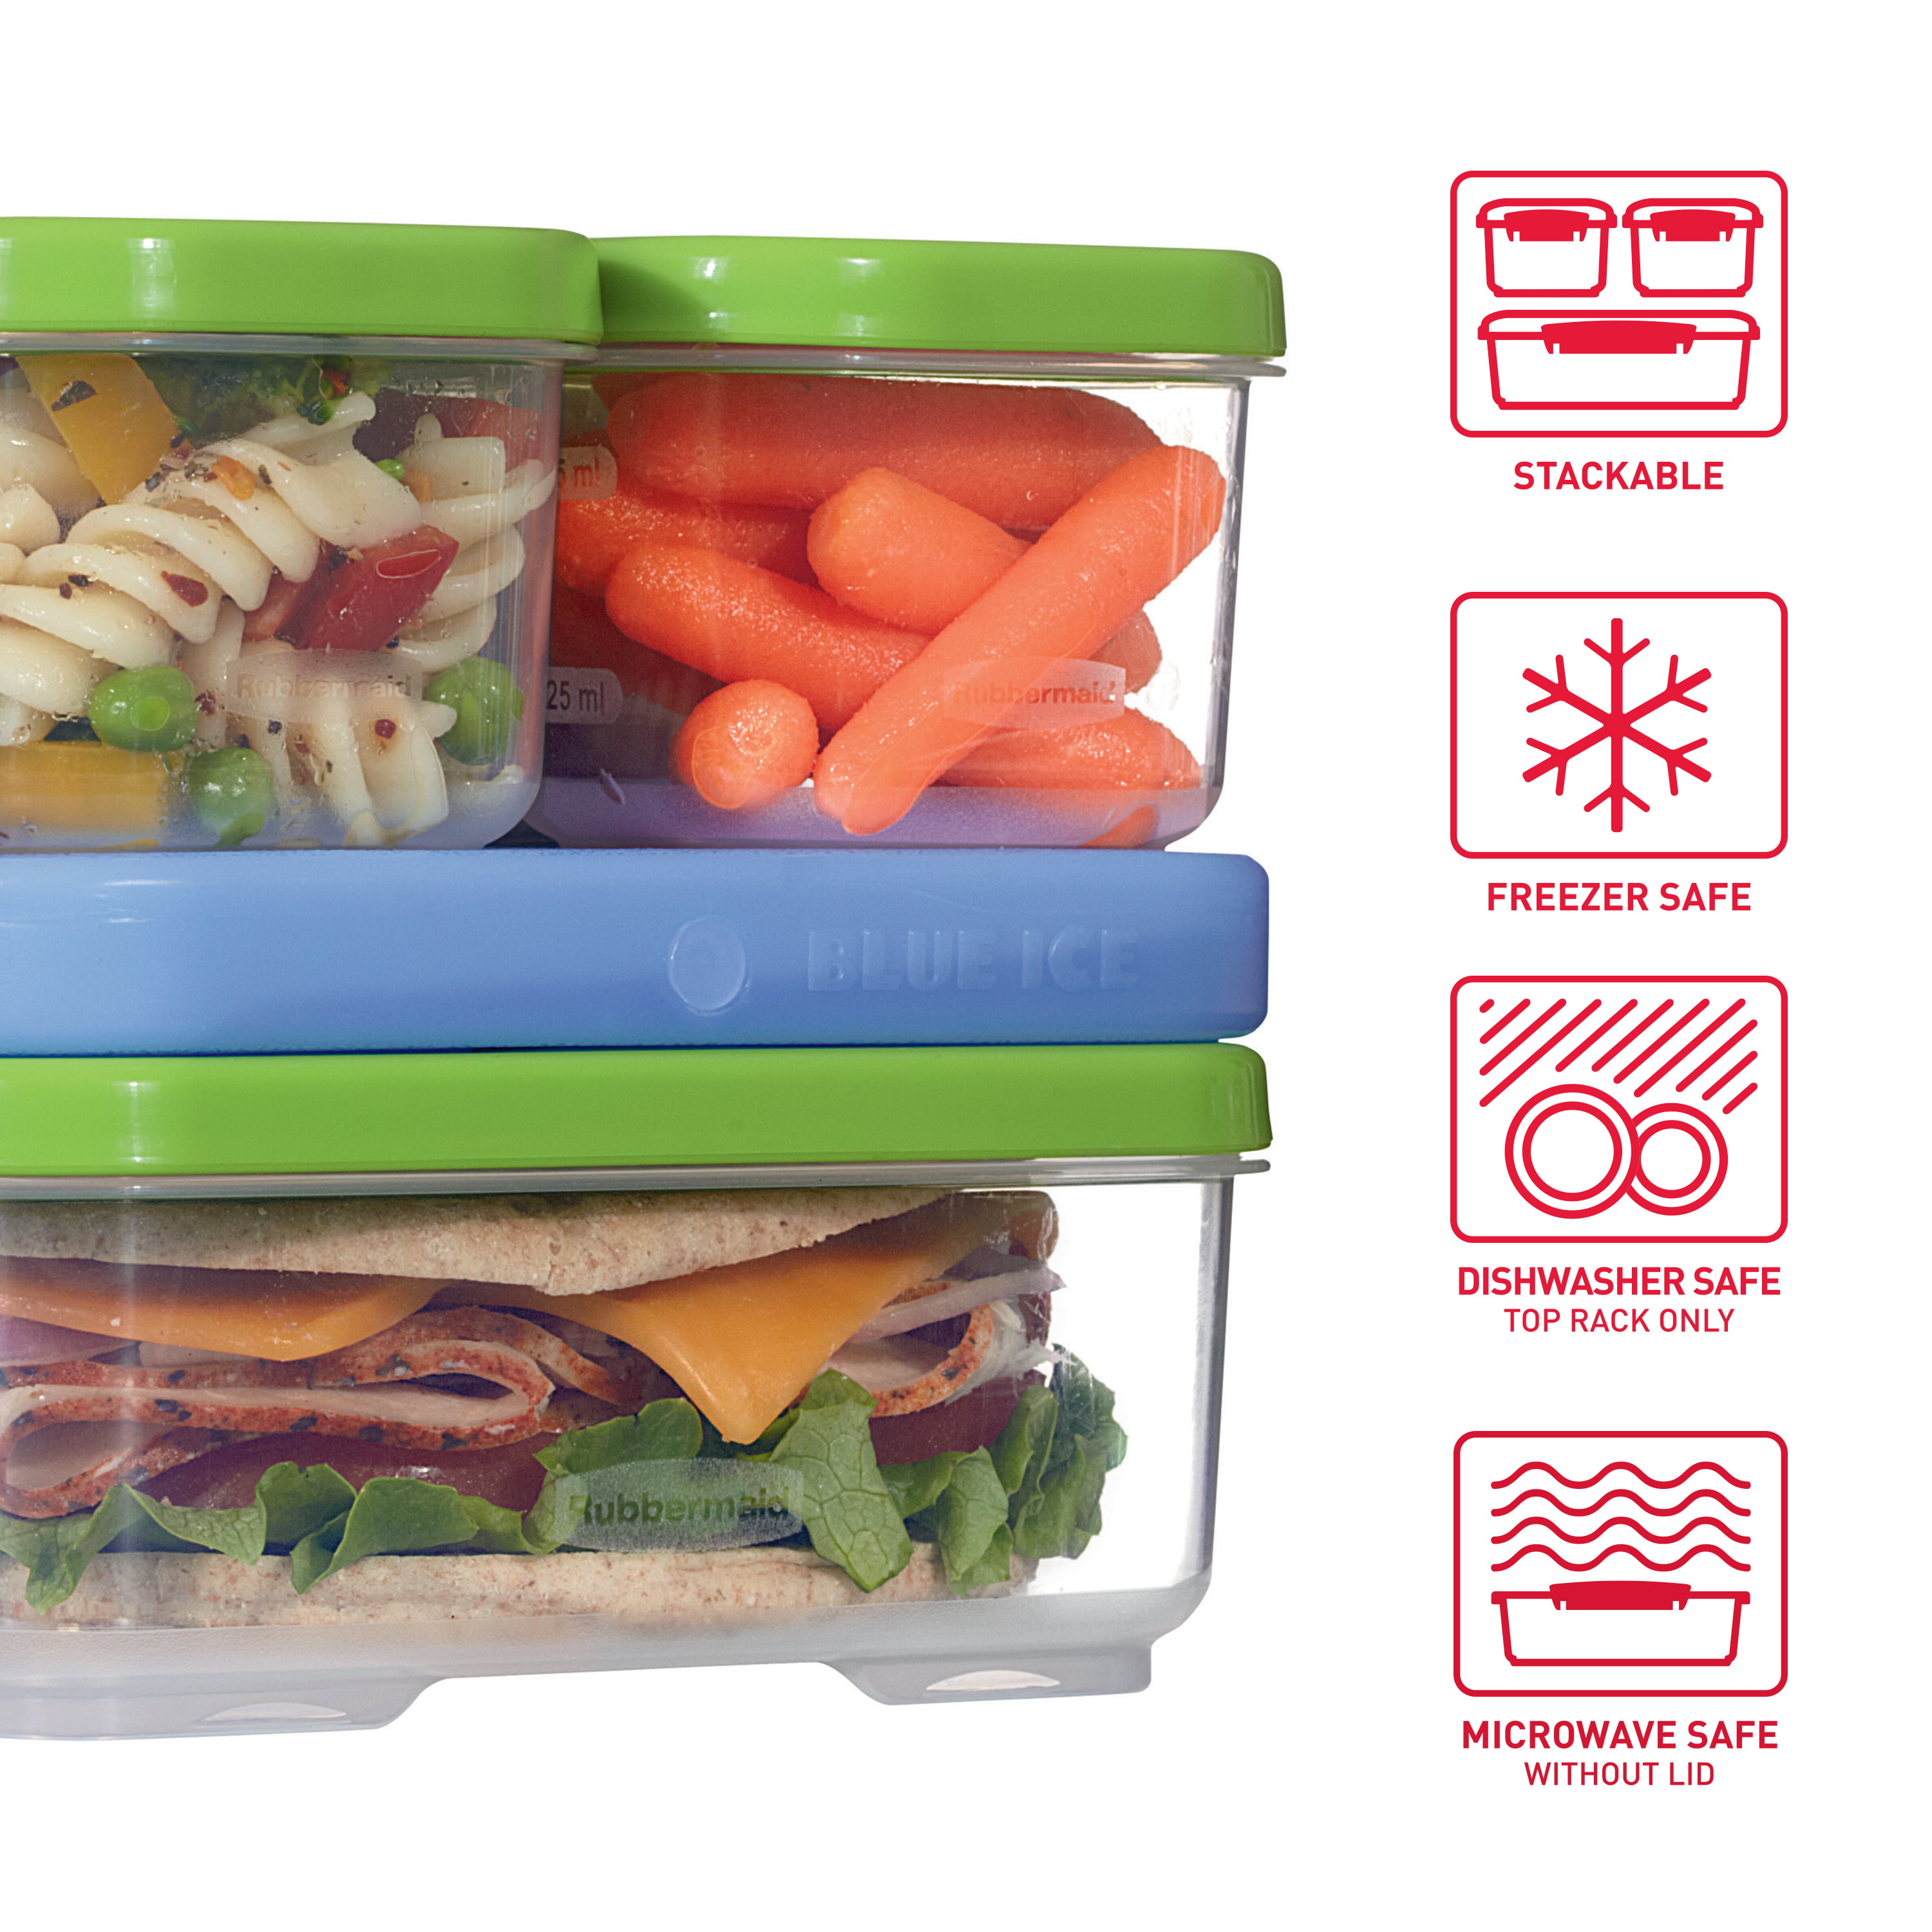 Rubbermaid LunchBlox Sandwich Kit Review - Upstate Ramblings